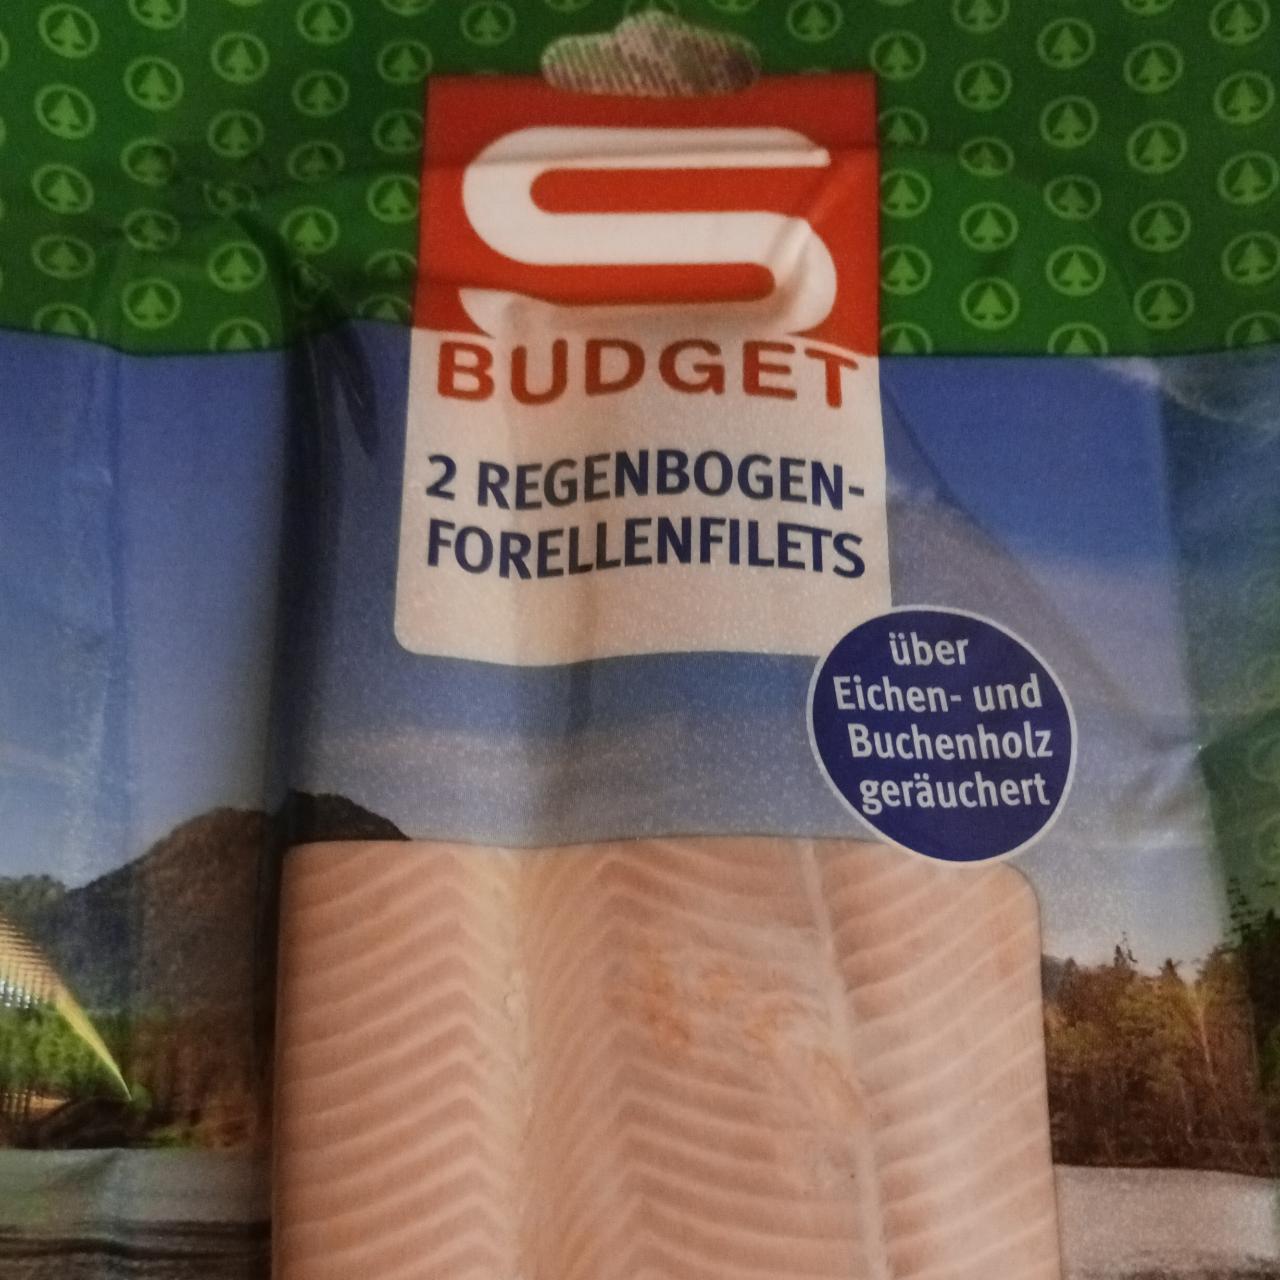 Fotografie - 2 Regenbogen Forellenfilets S Budget